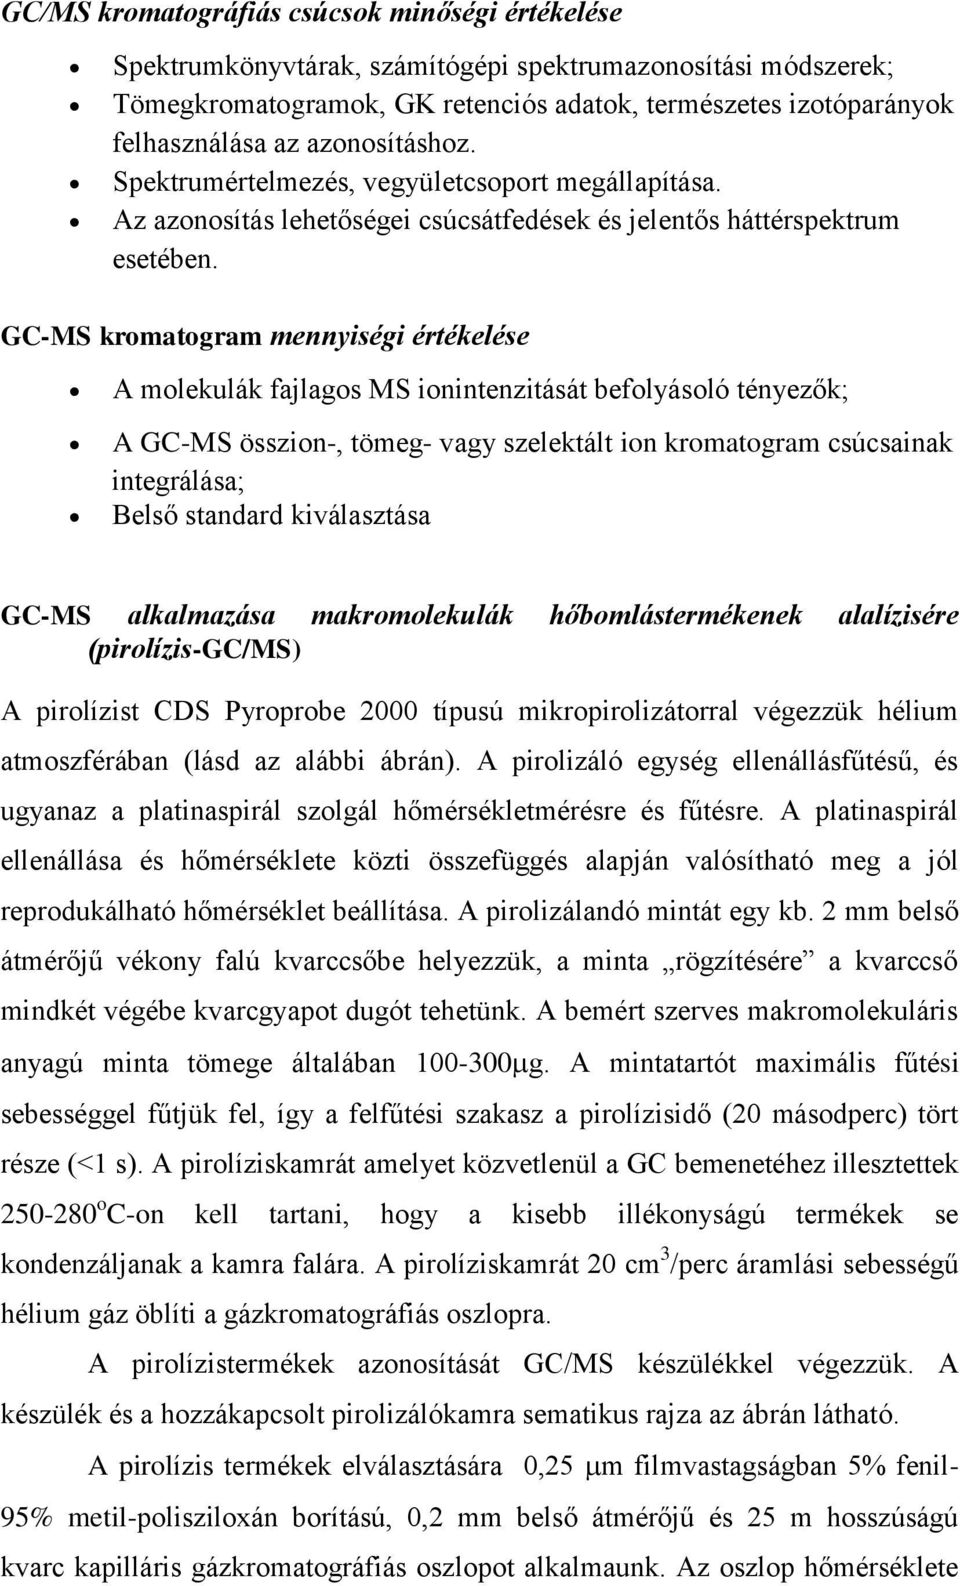 Pirolízis-GC-MS Speciális laborgyakorlat - PDF Ingyenes letöltés